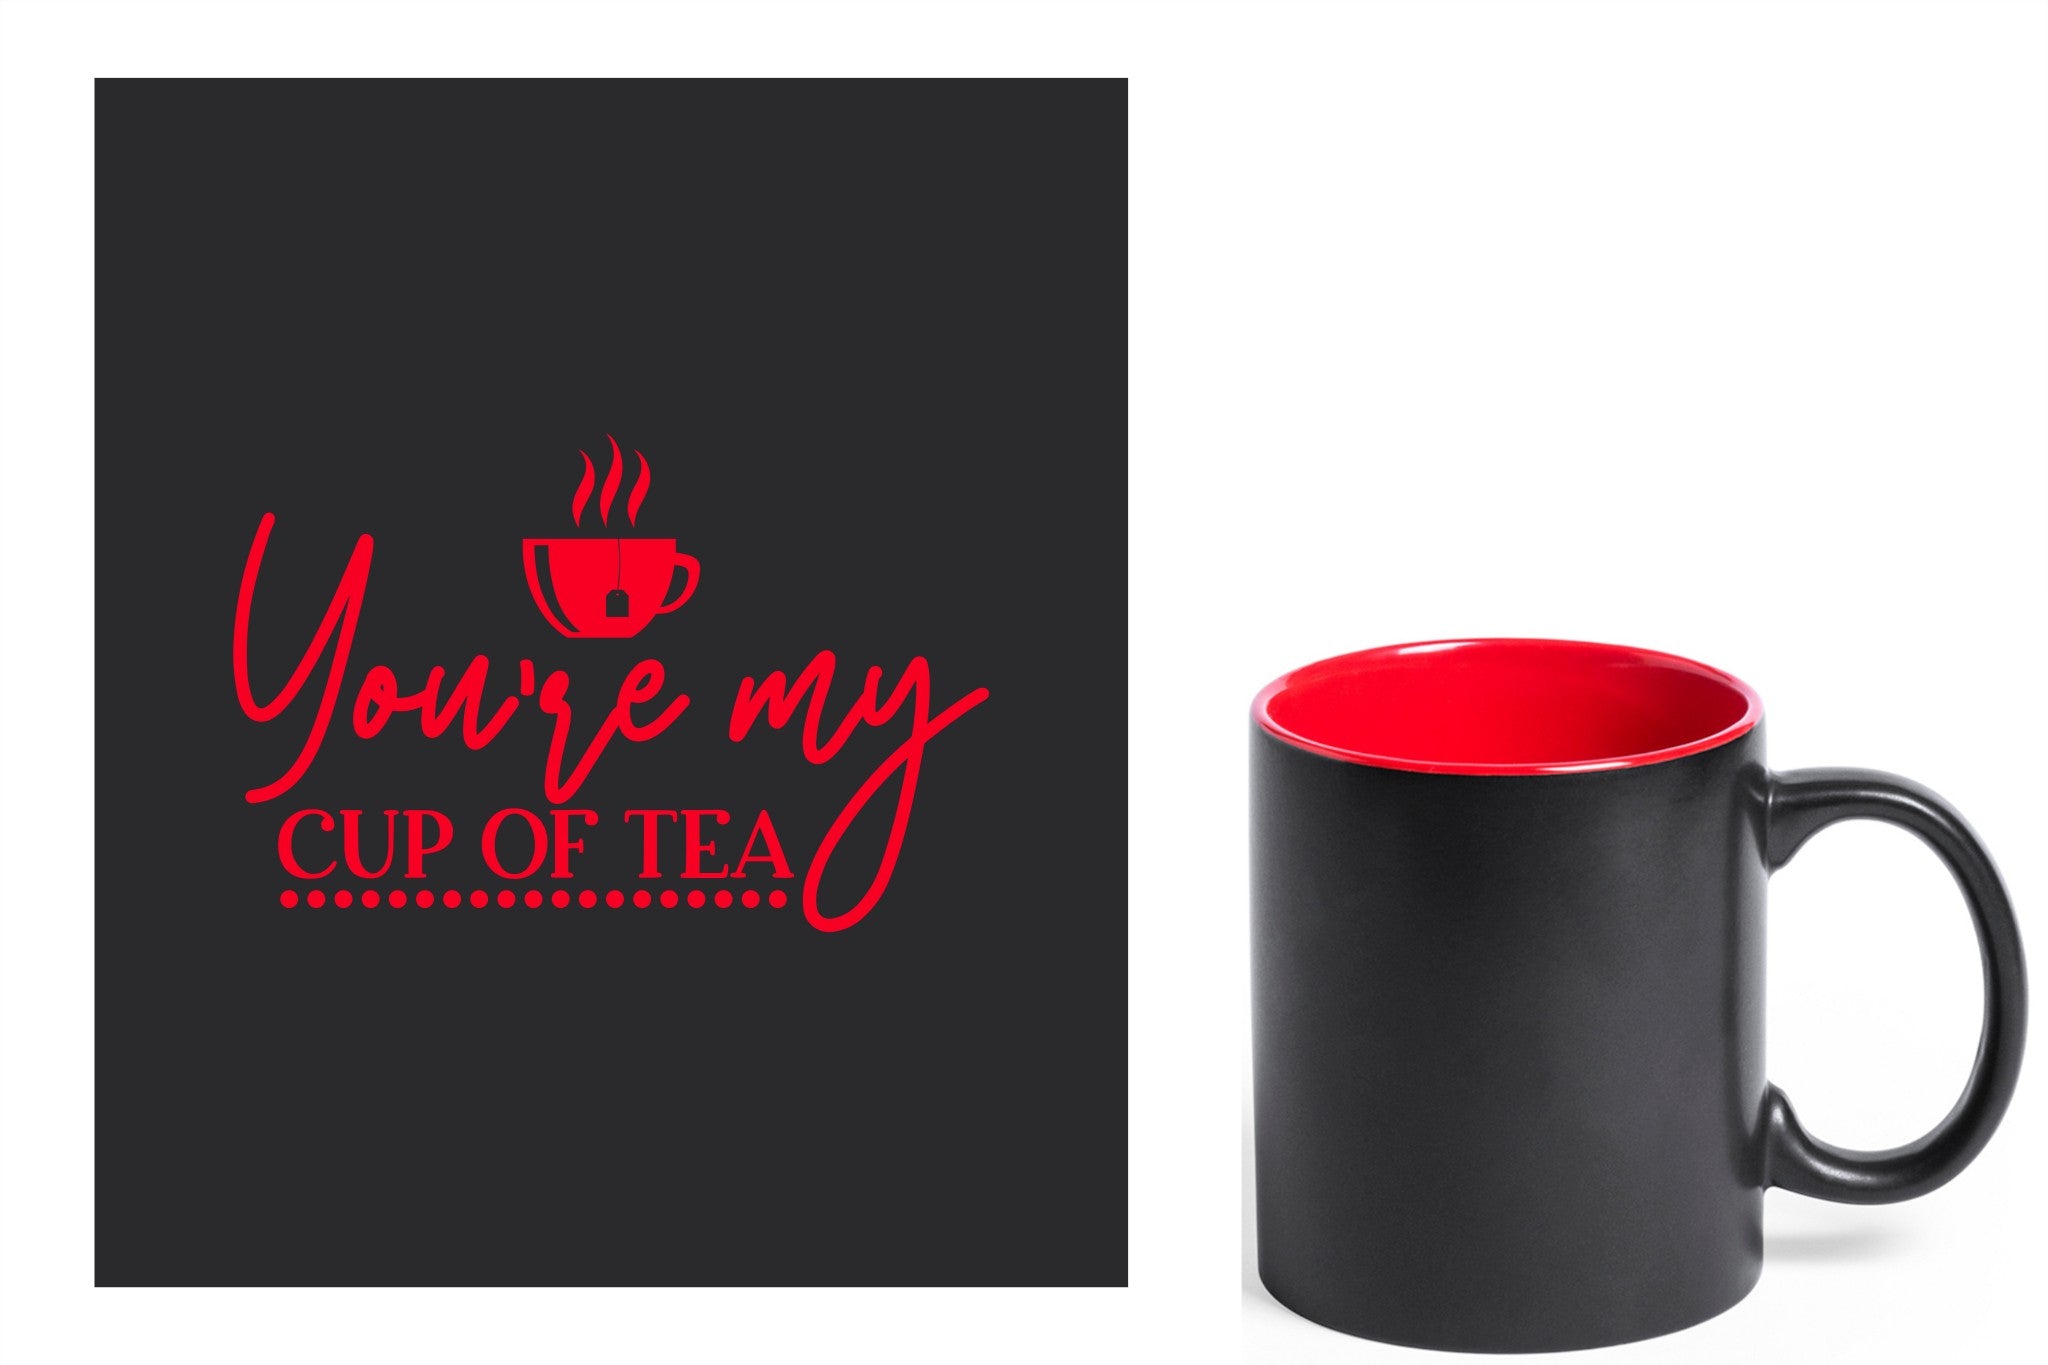 zwarte keramische mok met rode gravure  'You're my cup of tea'.